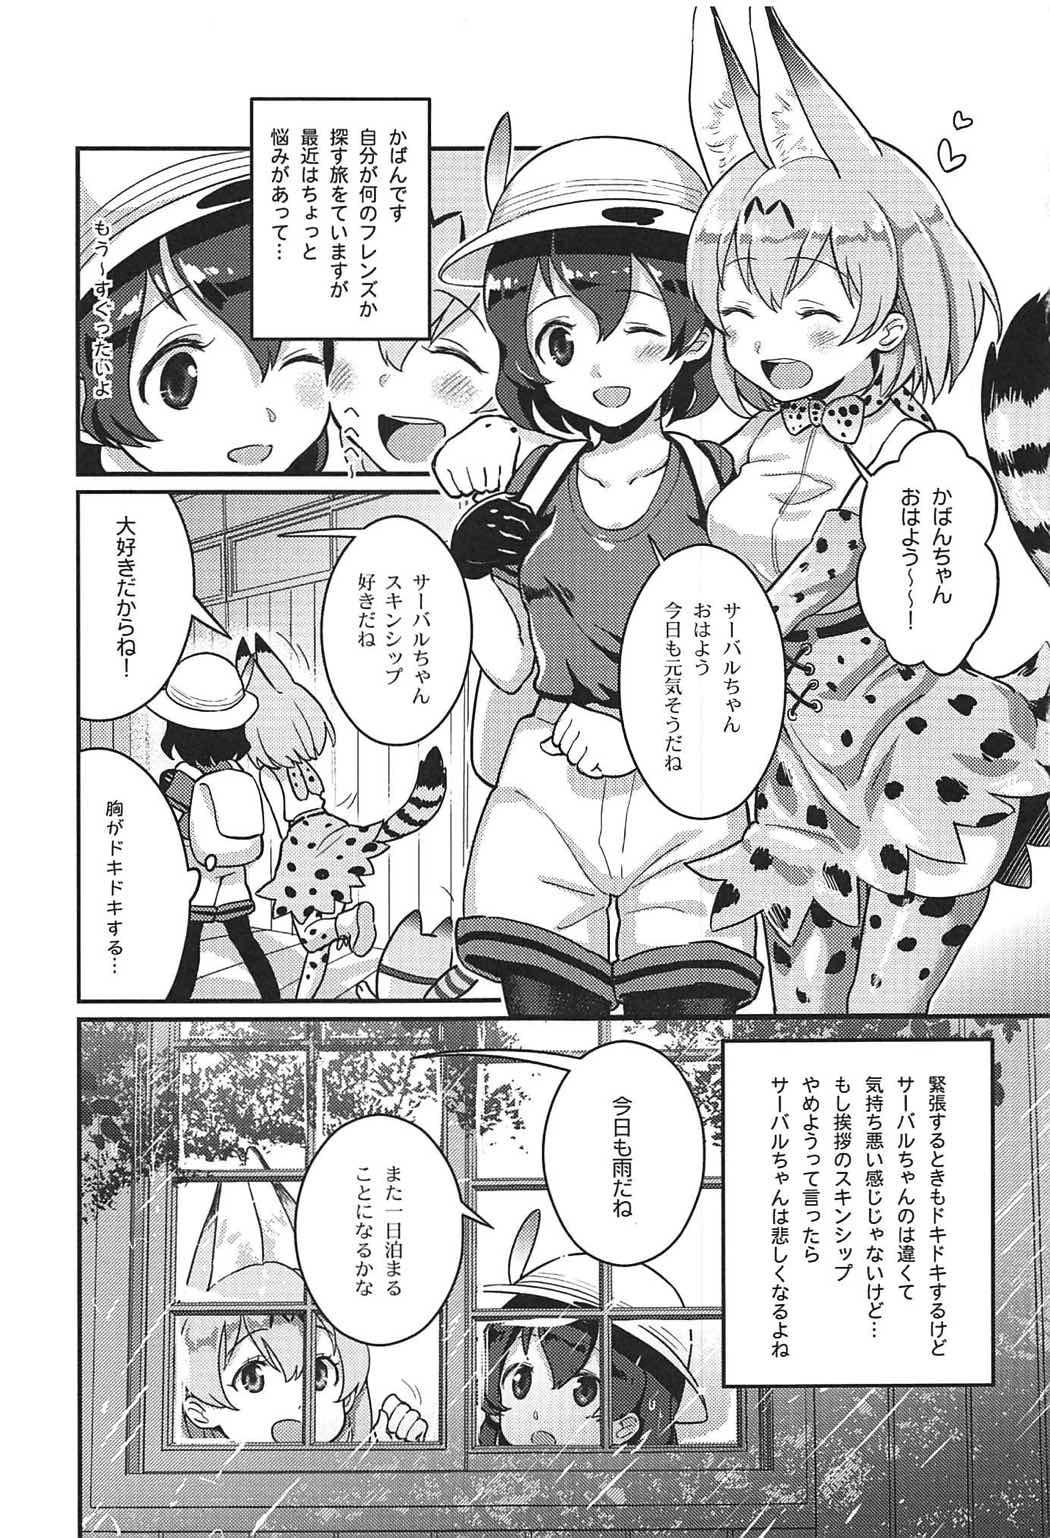 Tgirls Daisuki ni Kimatteru!! - Kemono friends Coed - Page 2